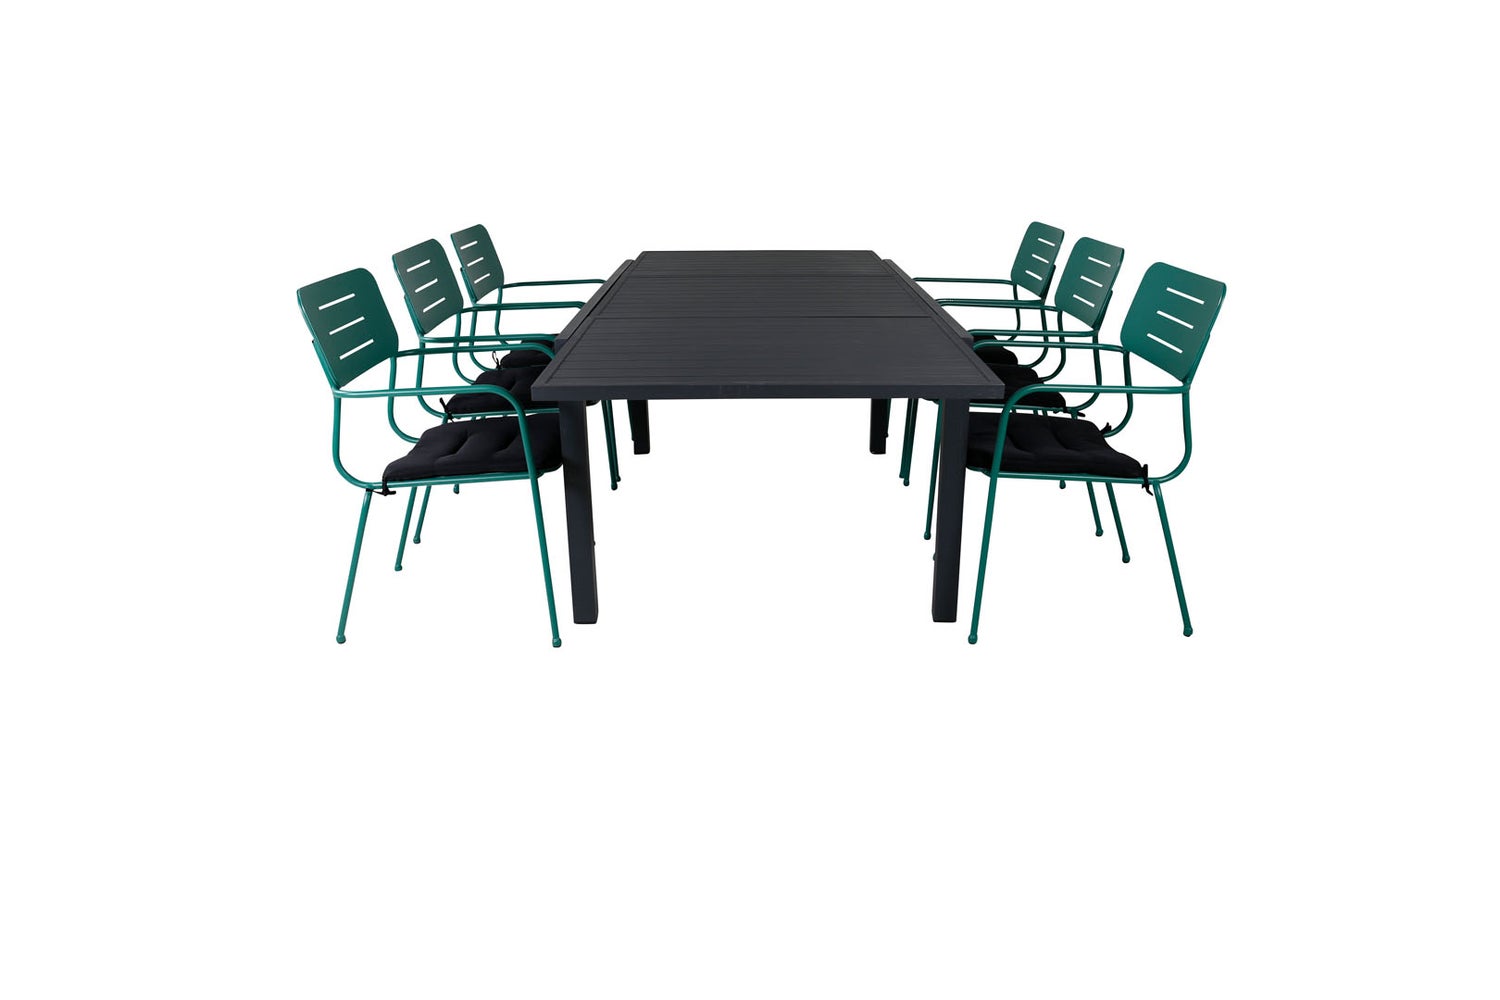 Marbella Gartenset Tisch 100x160/240cm und 6 Stühle ArmlehneG Nicke grün, schwarz.